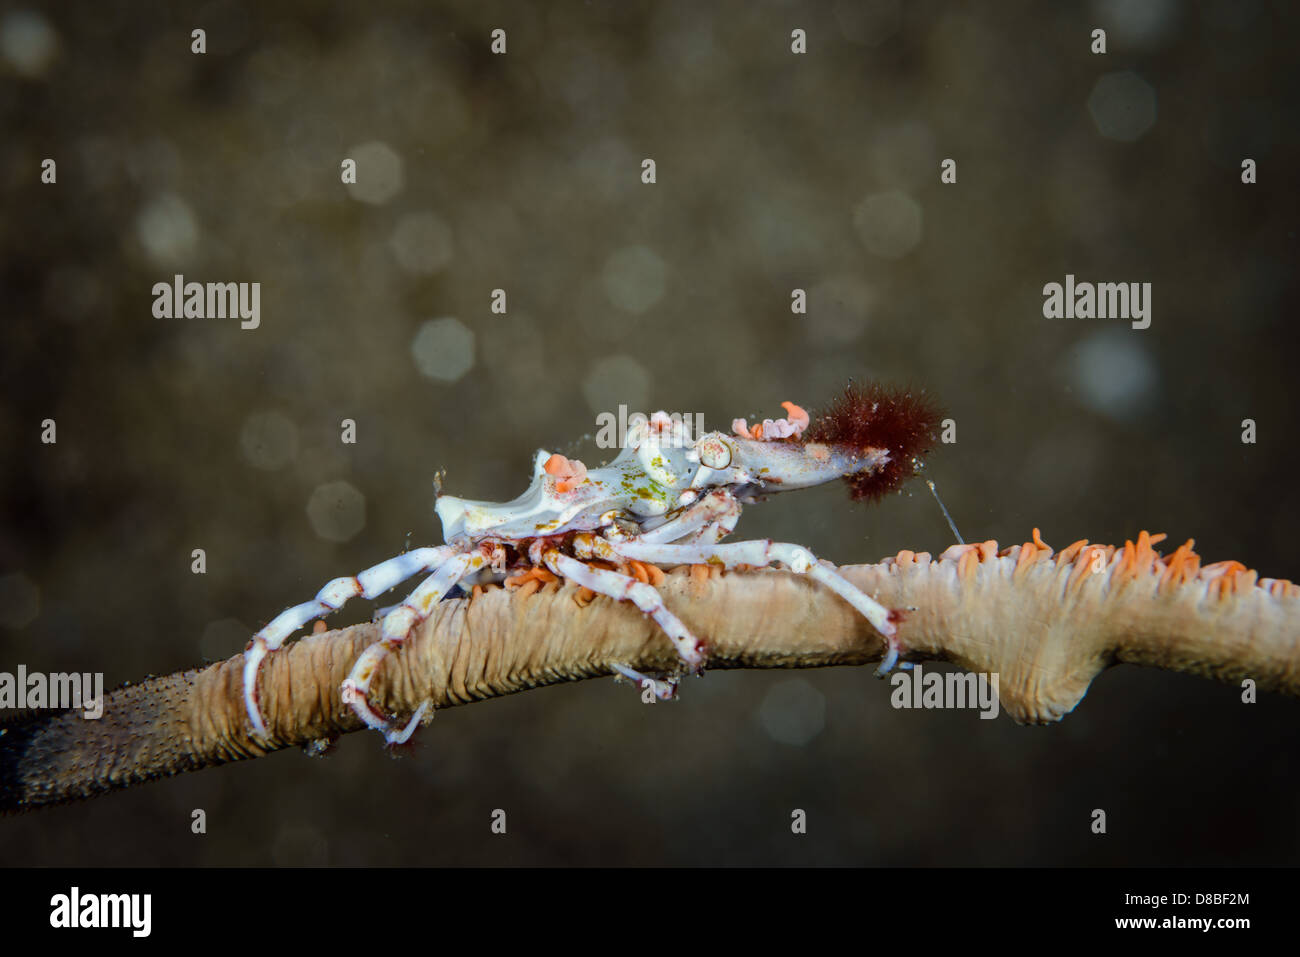 Un crabe xeno sur le whip coral avec de beaux effets de flou en arrière-plan. Photo prise à Ambon en Indonésie sous l'eau. Banque D'Images